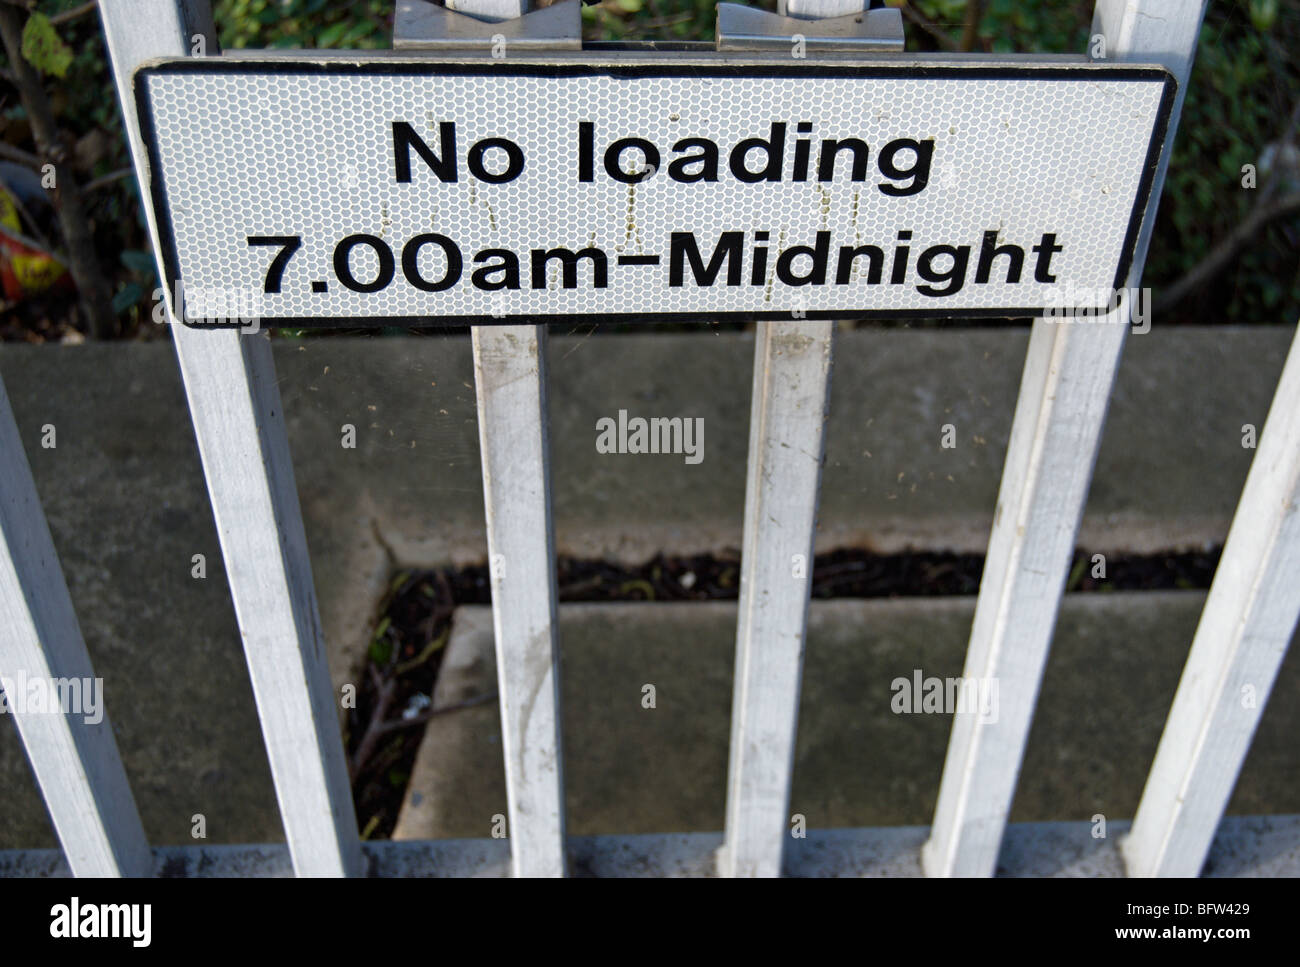 British cartello stradale che indica assenza di caricamento 7am a mezzanotte, a Kingston upon Thames Surrey, Inghilterra Foto Stock